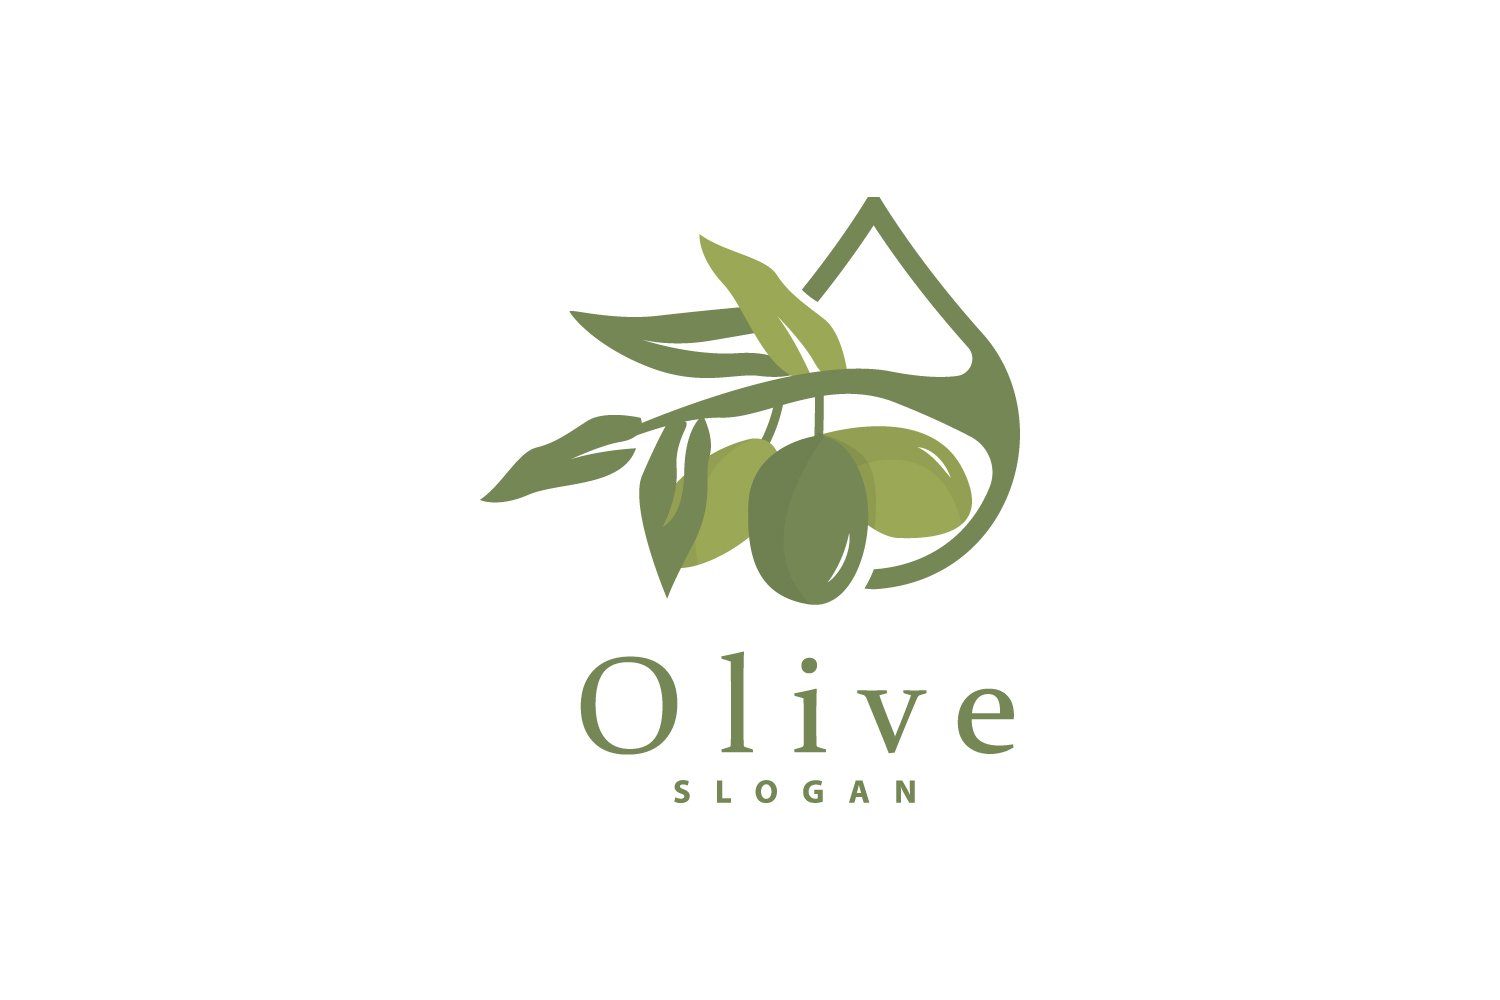 Olive Oil Logo Olive Leaf PlantV24